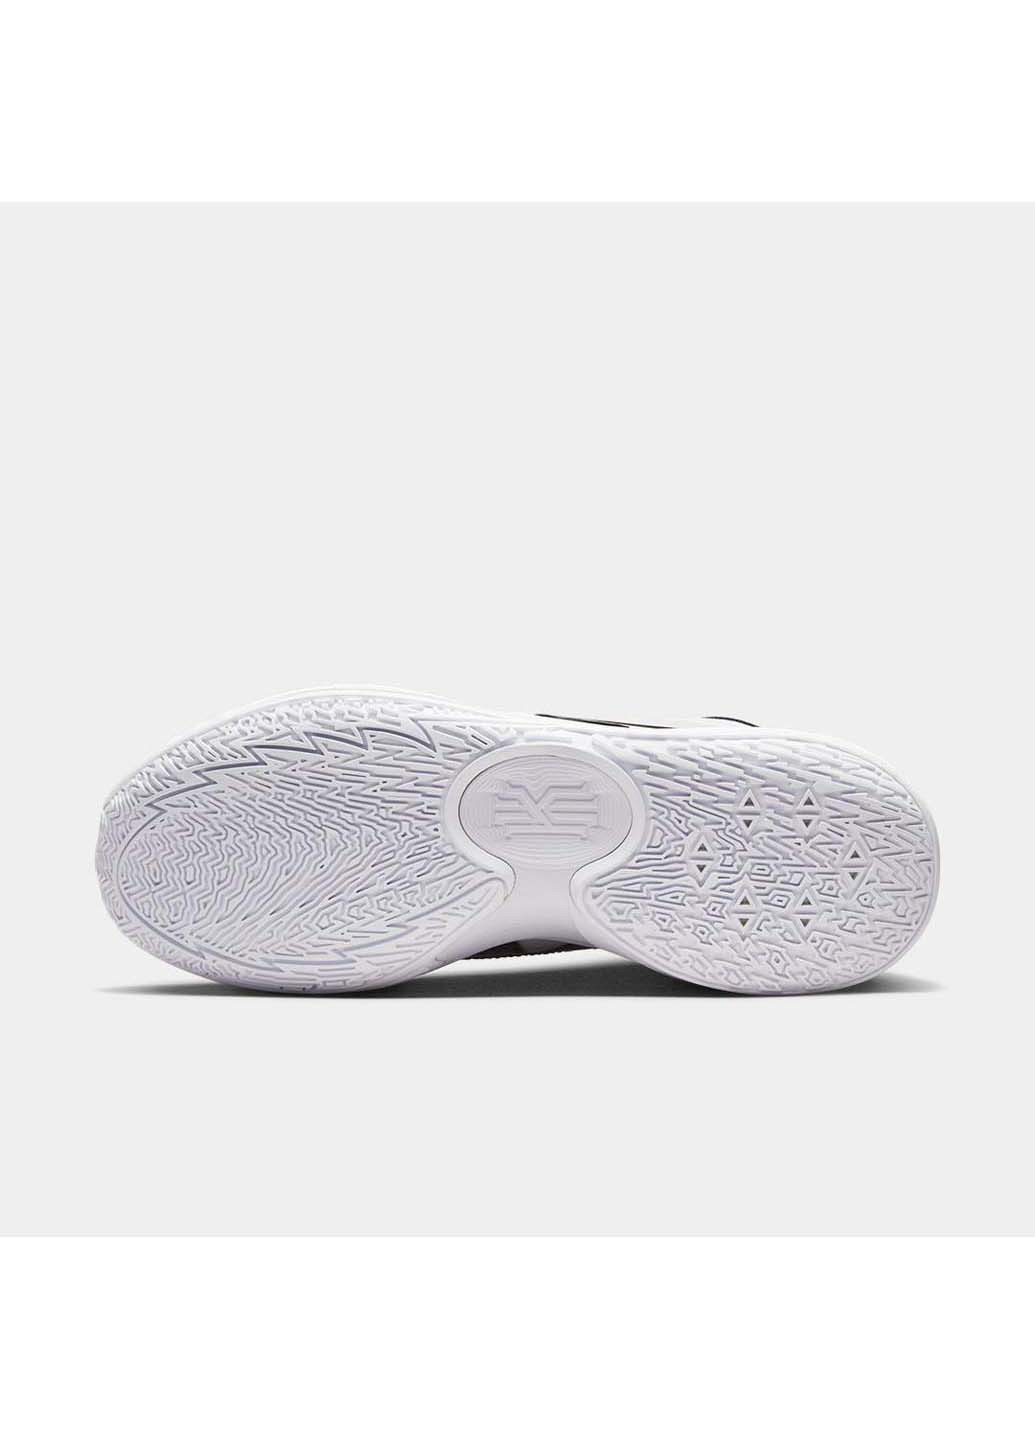 Черно-белые демисезонные кроссовки kyrie low 5 Nike